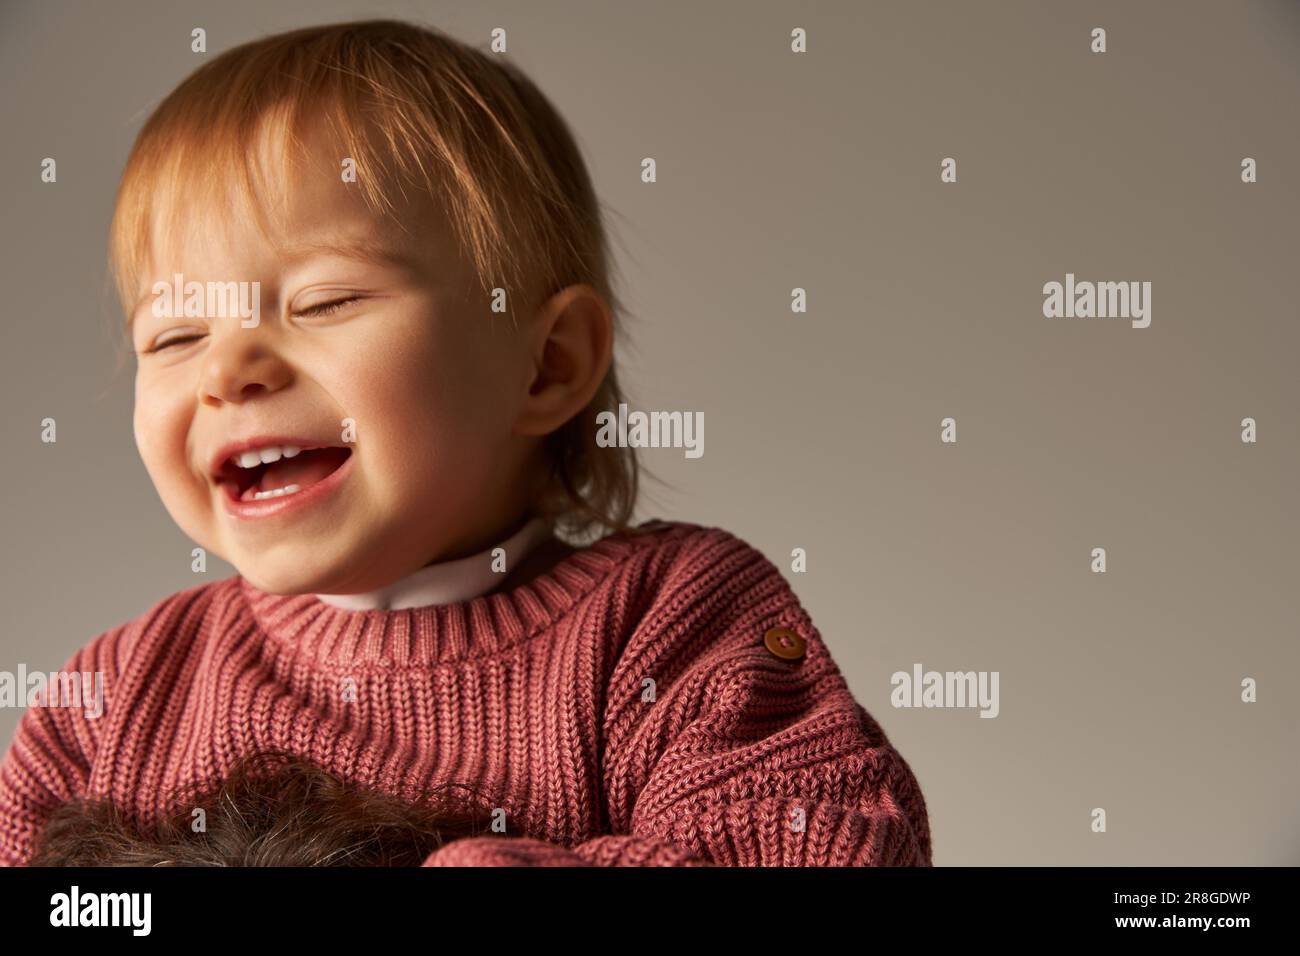 ritratto di ragazza cute del bambino, bambino del toddler, capretto felice in abbigliamento casual sorridente sullo sfondo grigio in studio, emozione, innocenza, moda del toddler Foto Stock